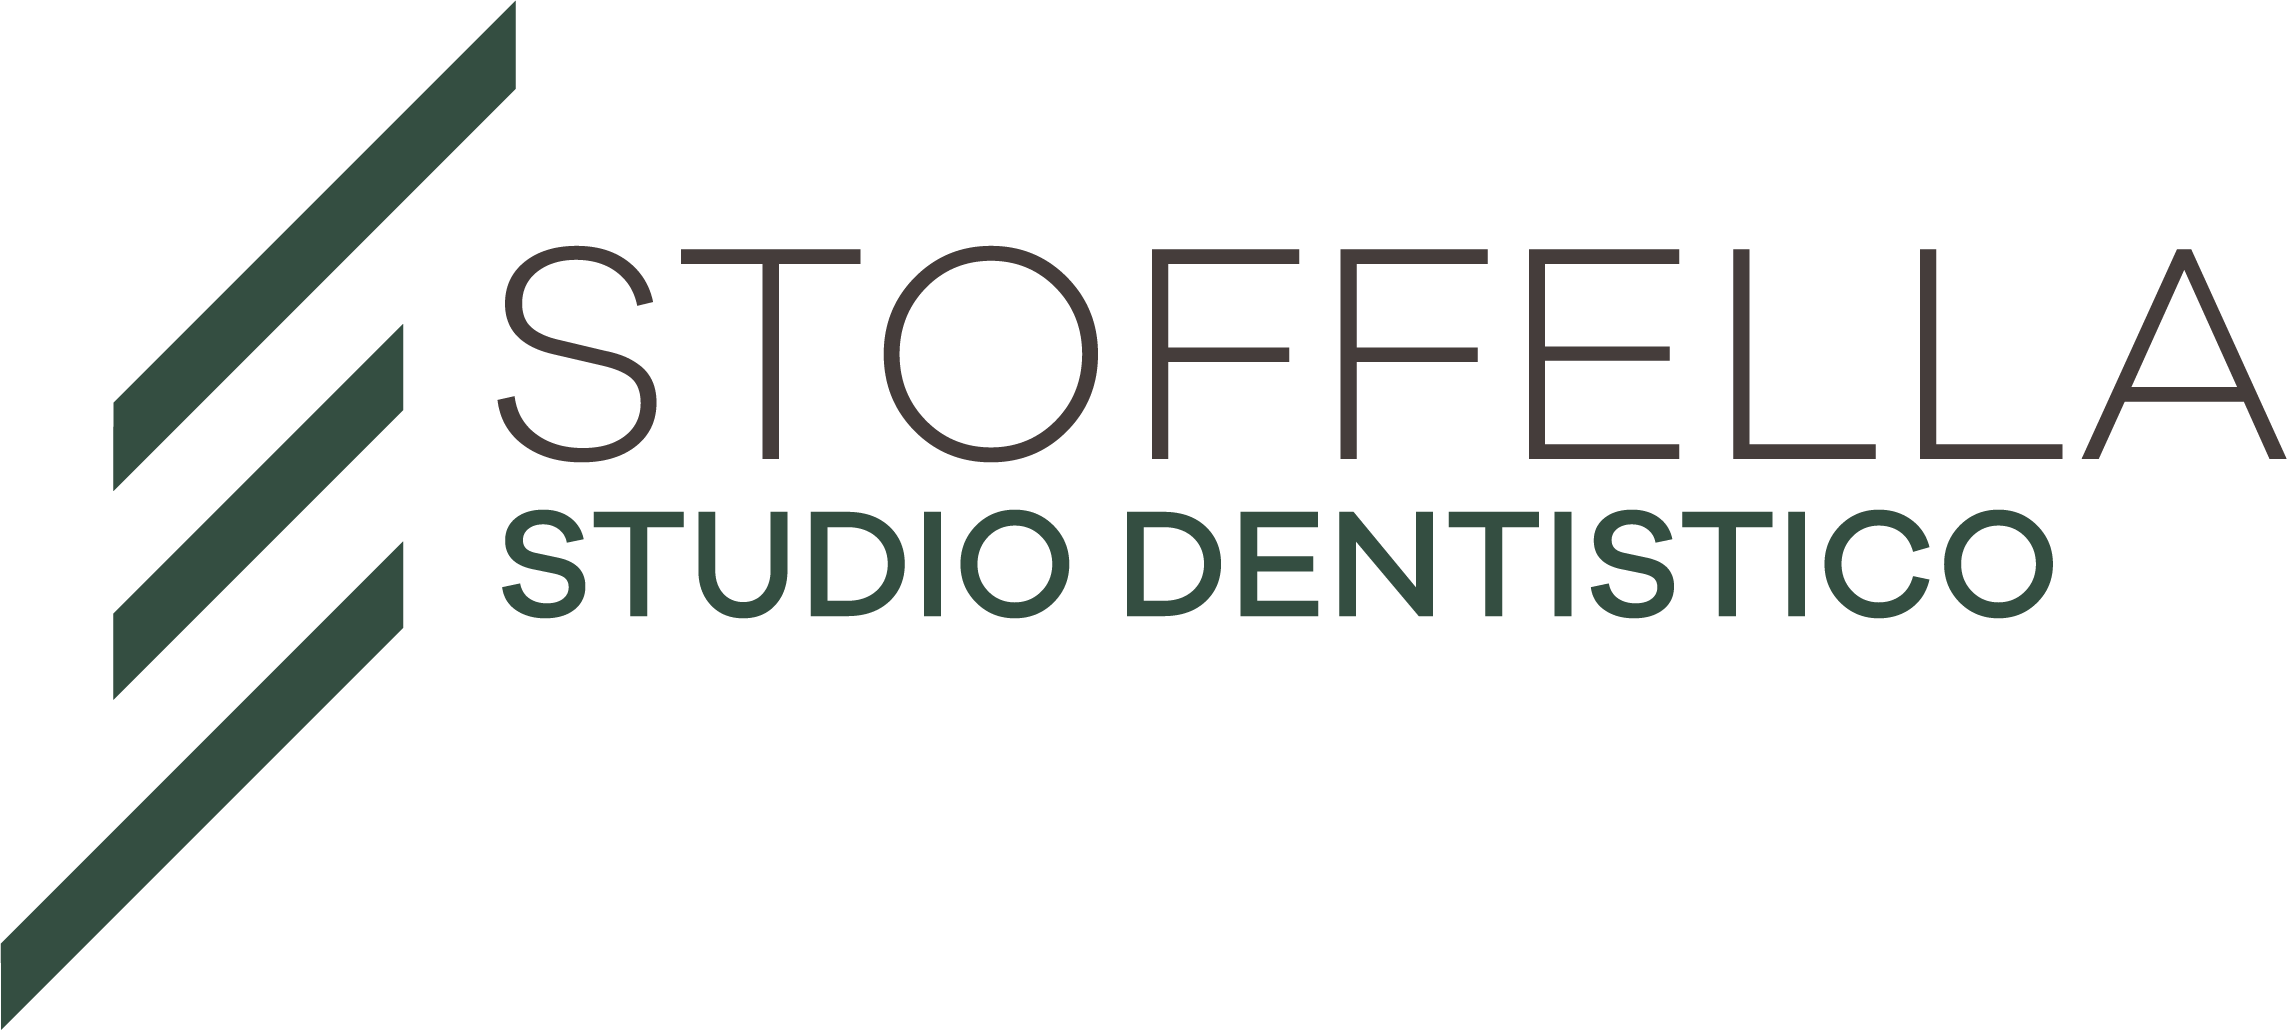 Logo Studio dentistico Stoffella - Studio dentistico Stoffella - dentista Rovereto